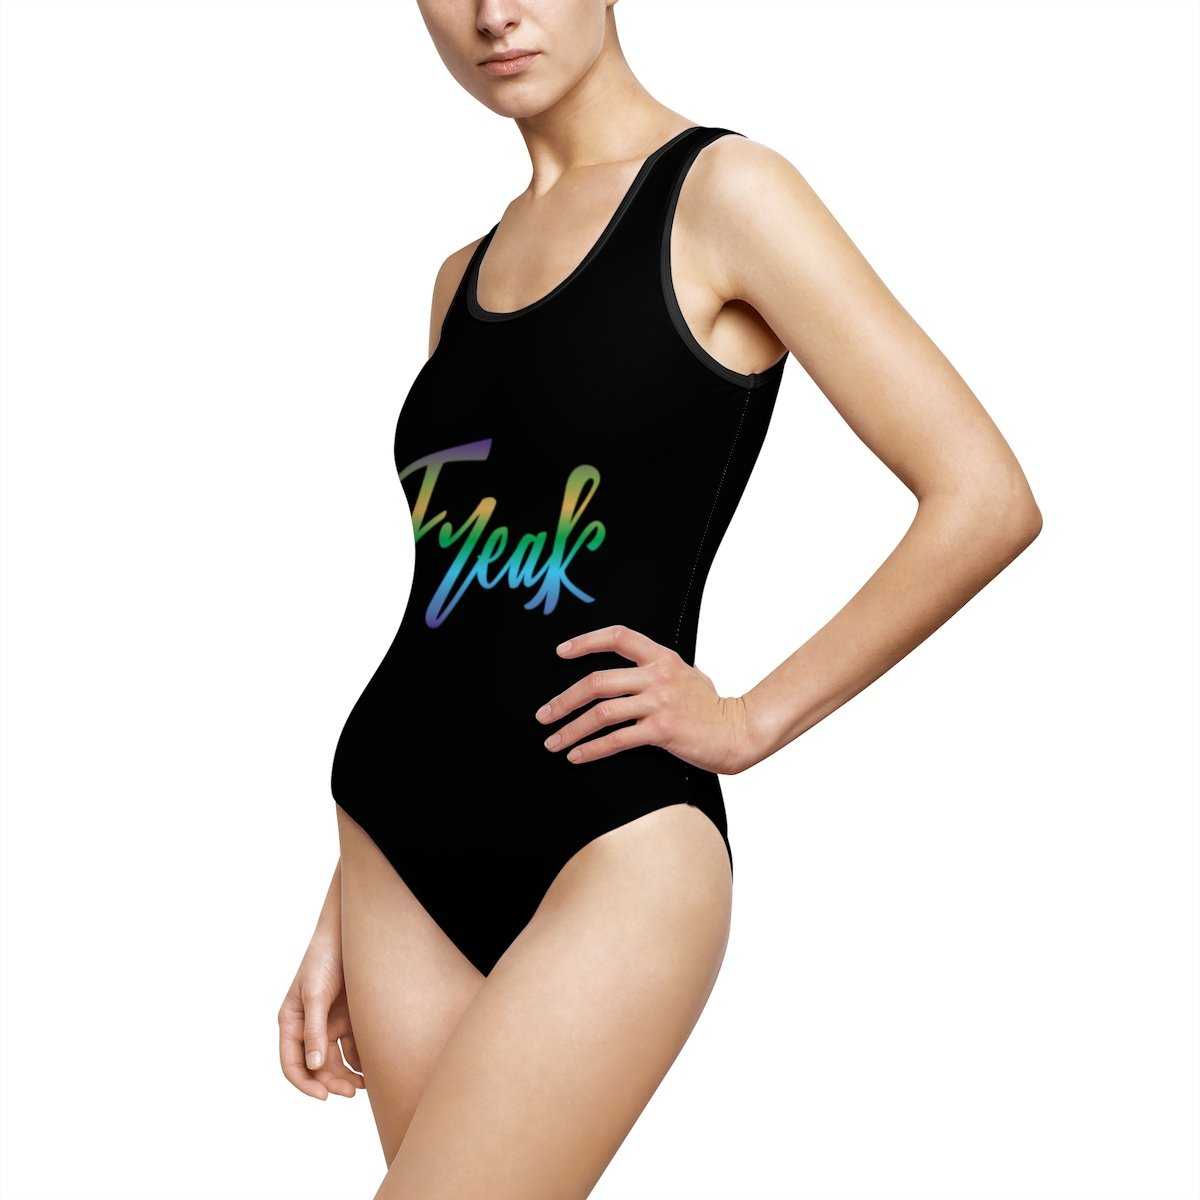 FREAK Swimsuit - Gradient on Black - shopcontrabrands.com